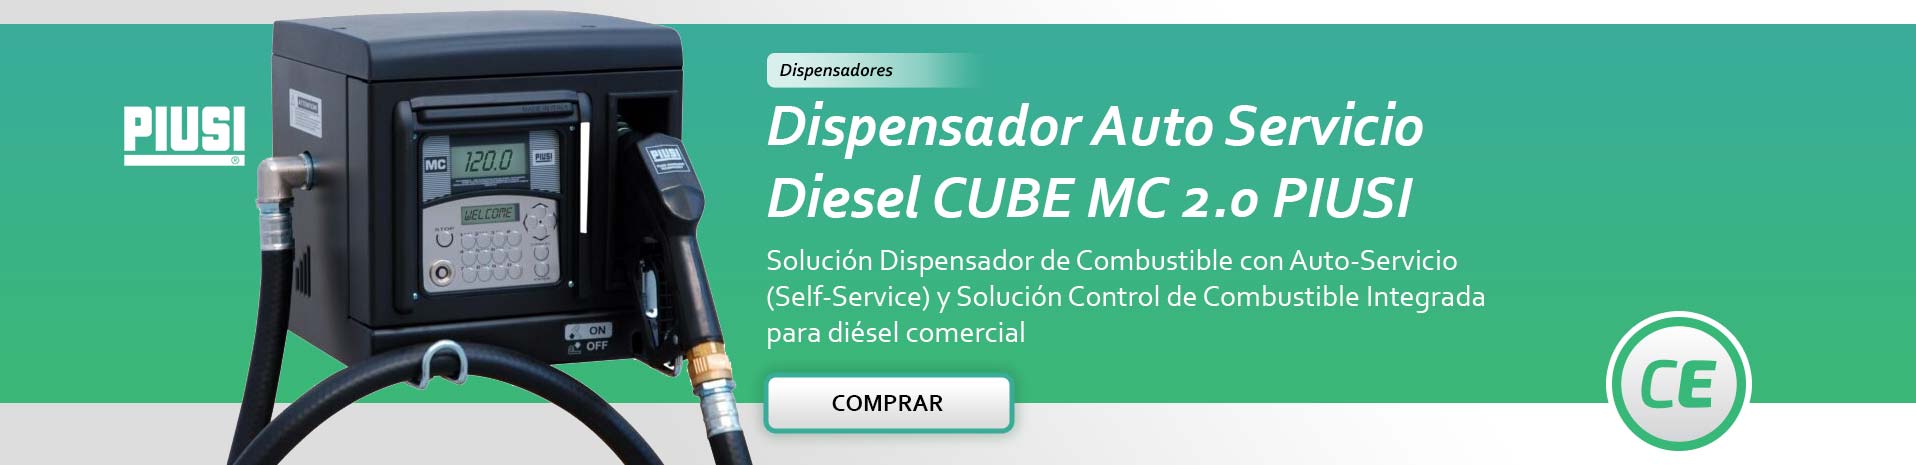 Dispensador Autoservicio Cube MC 2.0  -  Combustible Ecológicos